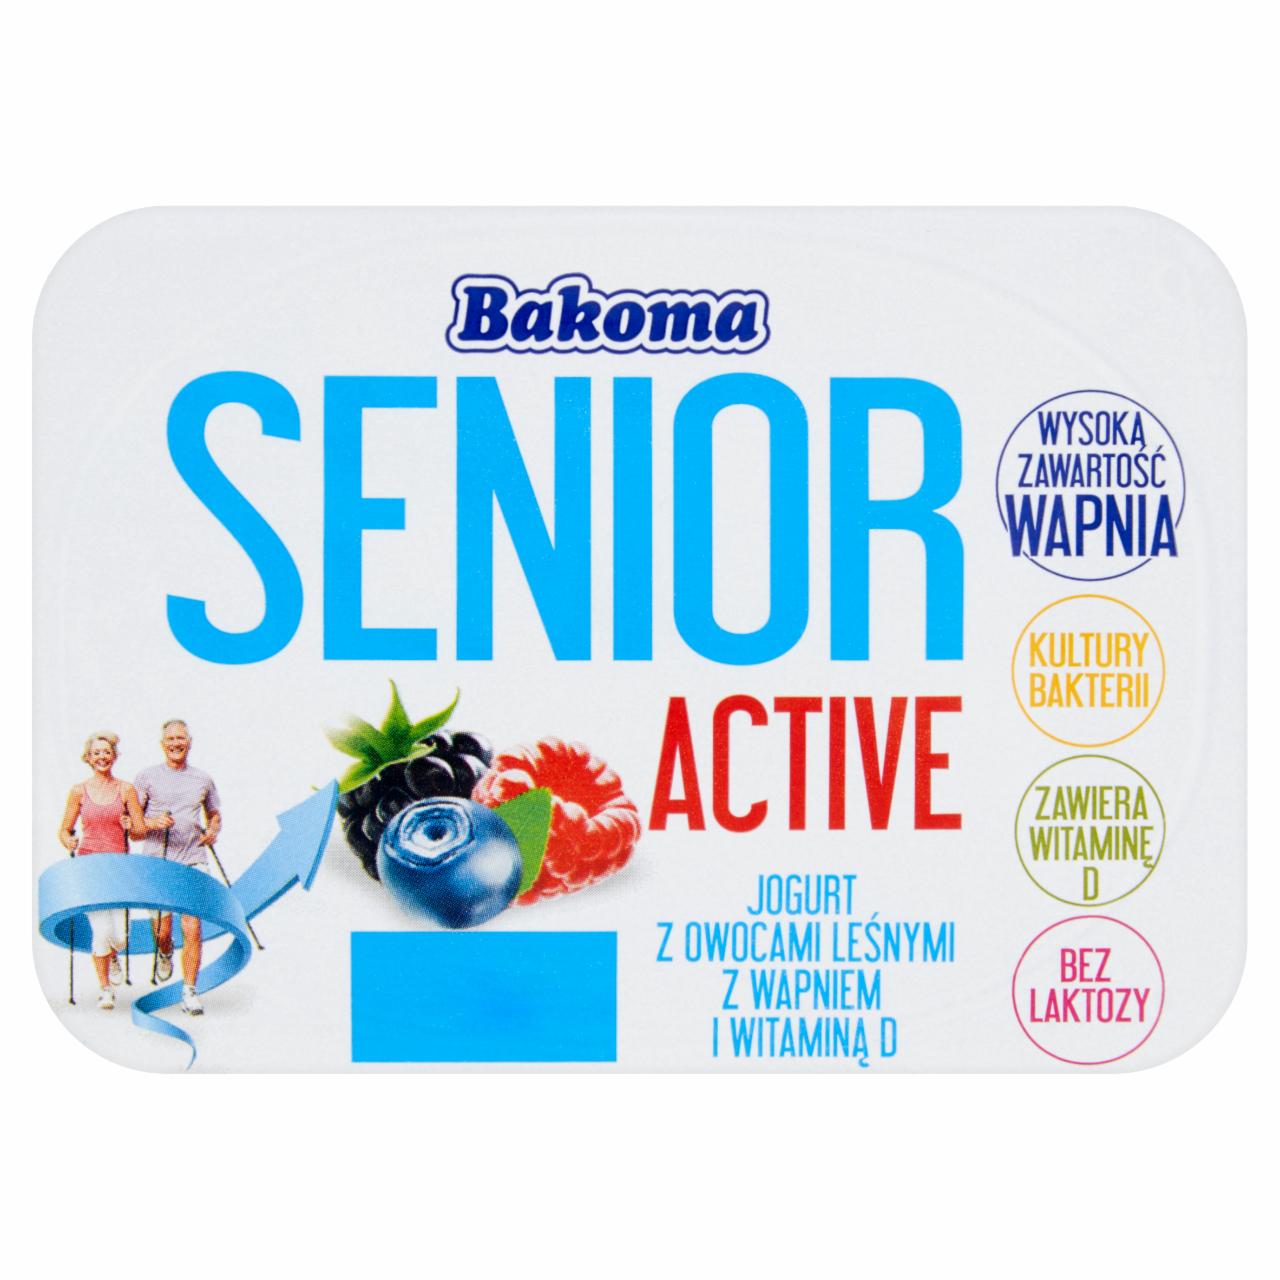 Zdjęcia - Bakoma Senior Active Jogurt z owocami leśnymi z wapniem i witaminą D 130 g